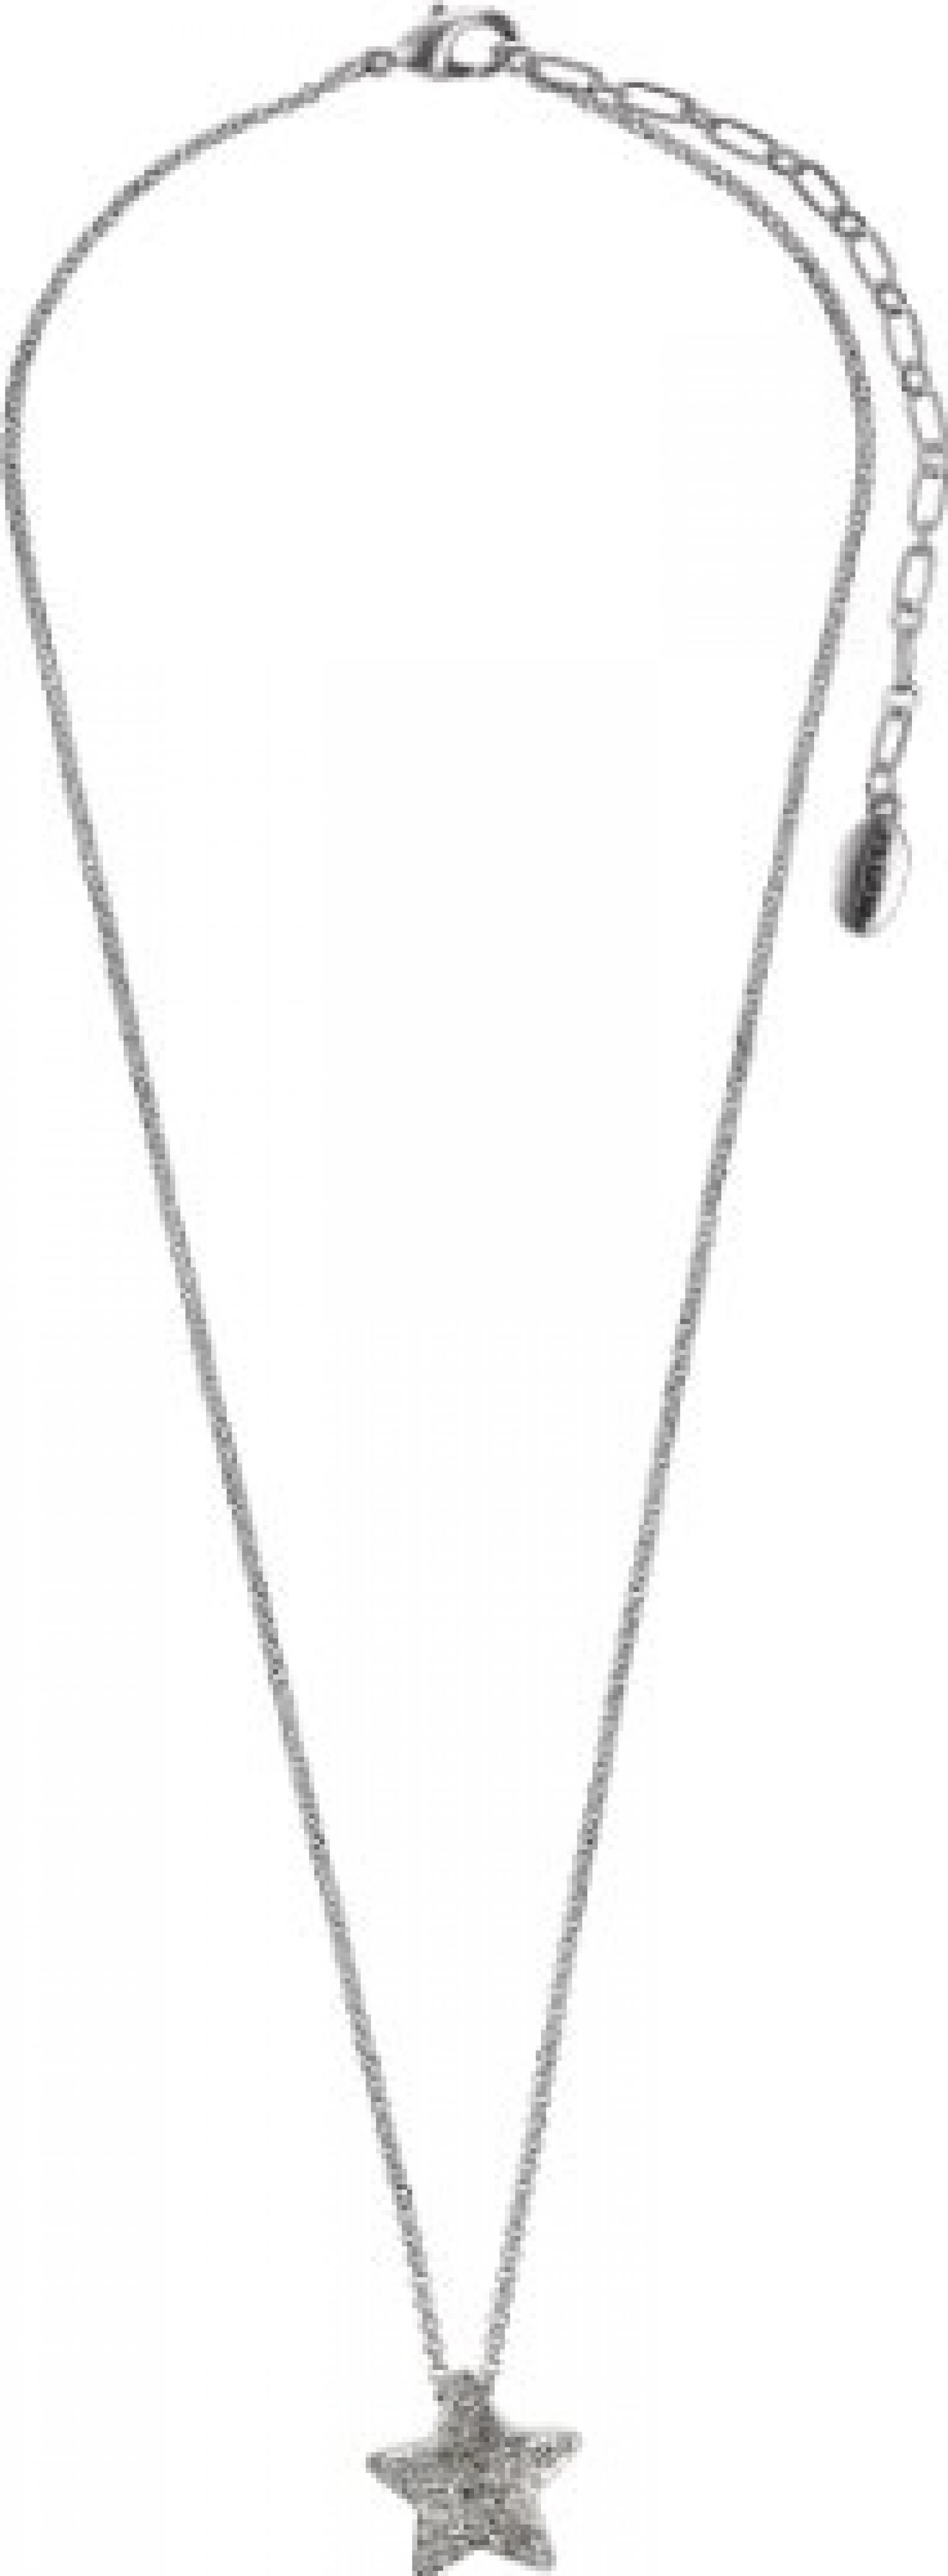 Pilgrim Jewelry Damen-Halskette mit Anhänger aus der Serie Classic versilbert kristall 40.0 cm 601236031 